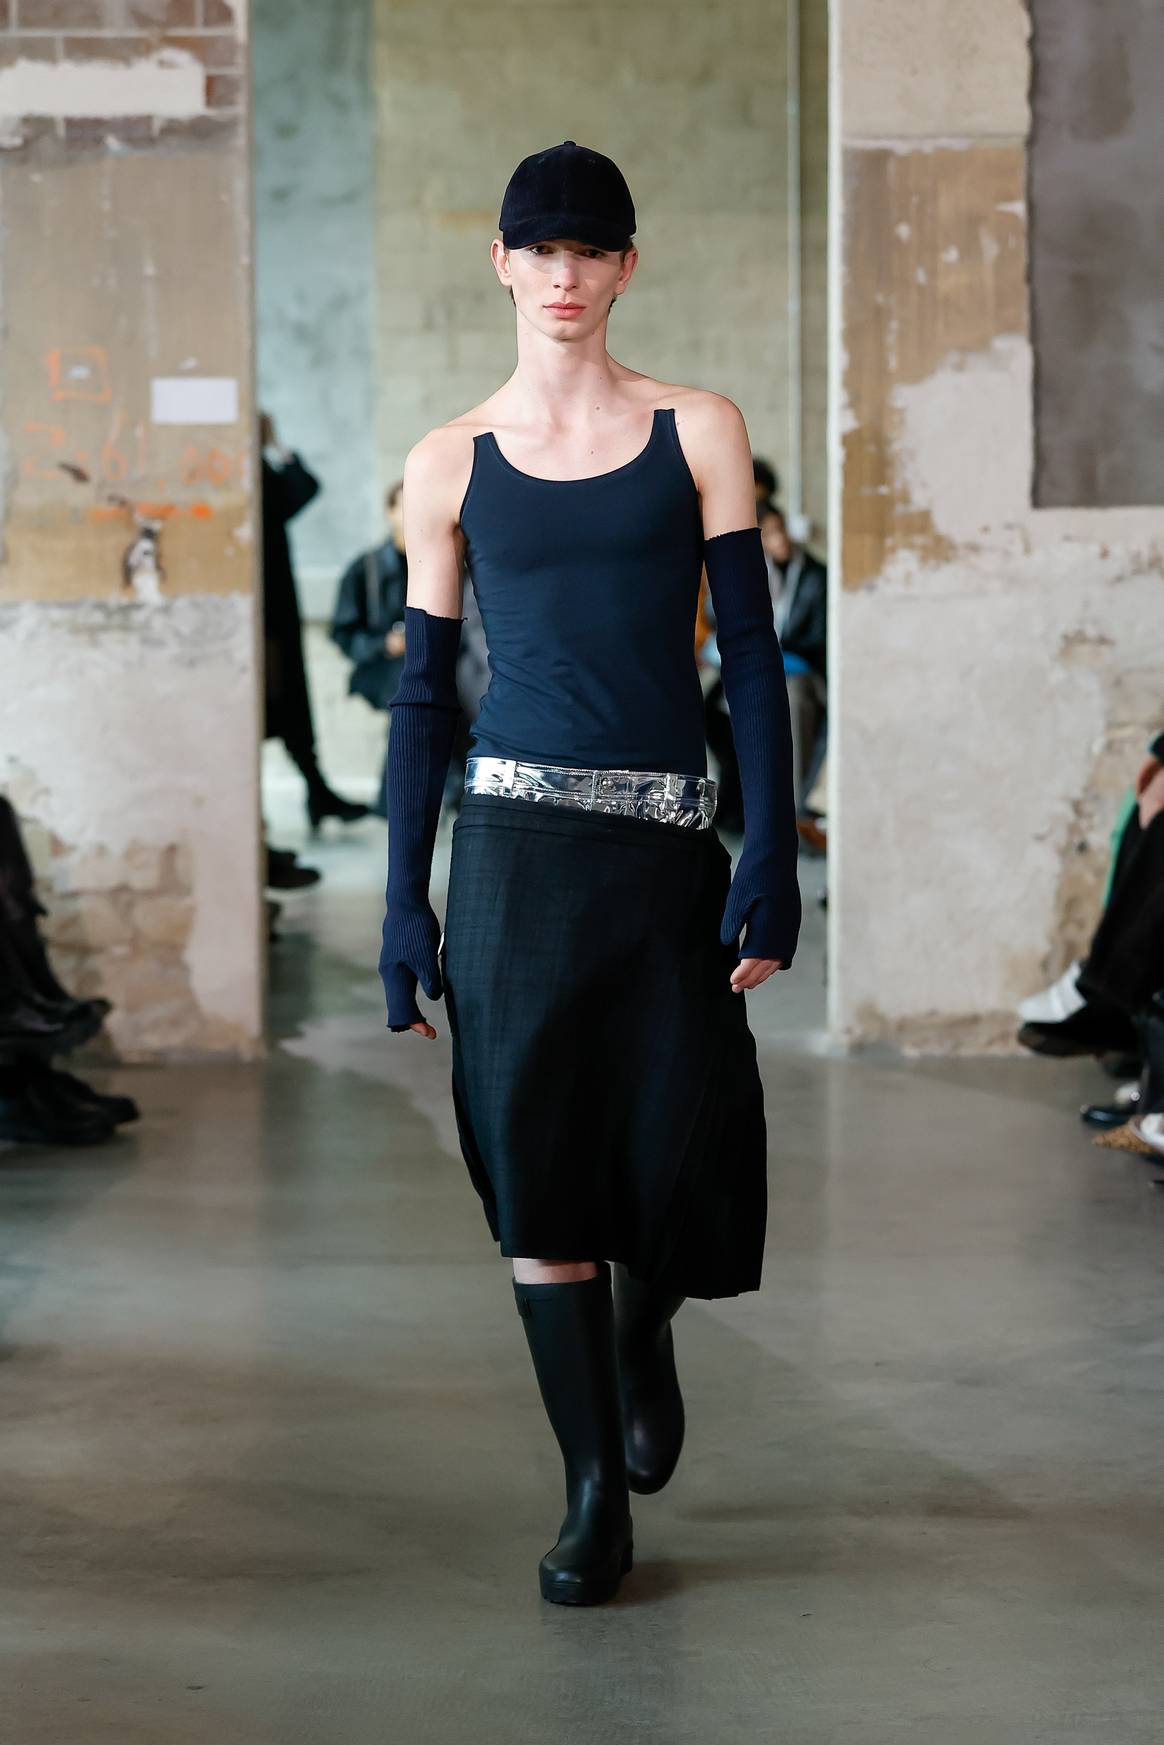 Duran Lantink presenteerde tijdens Paris Fashion Week in maart jl. ontwerpen van geupcyclede Hema-hemden (ja die van de winkelketen).